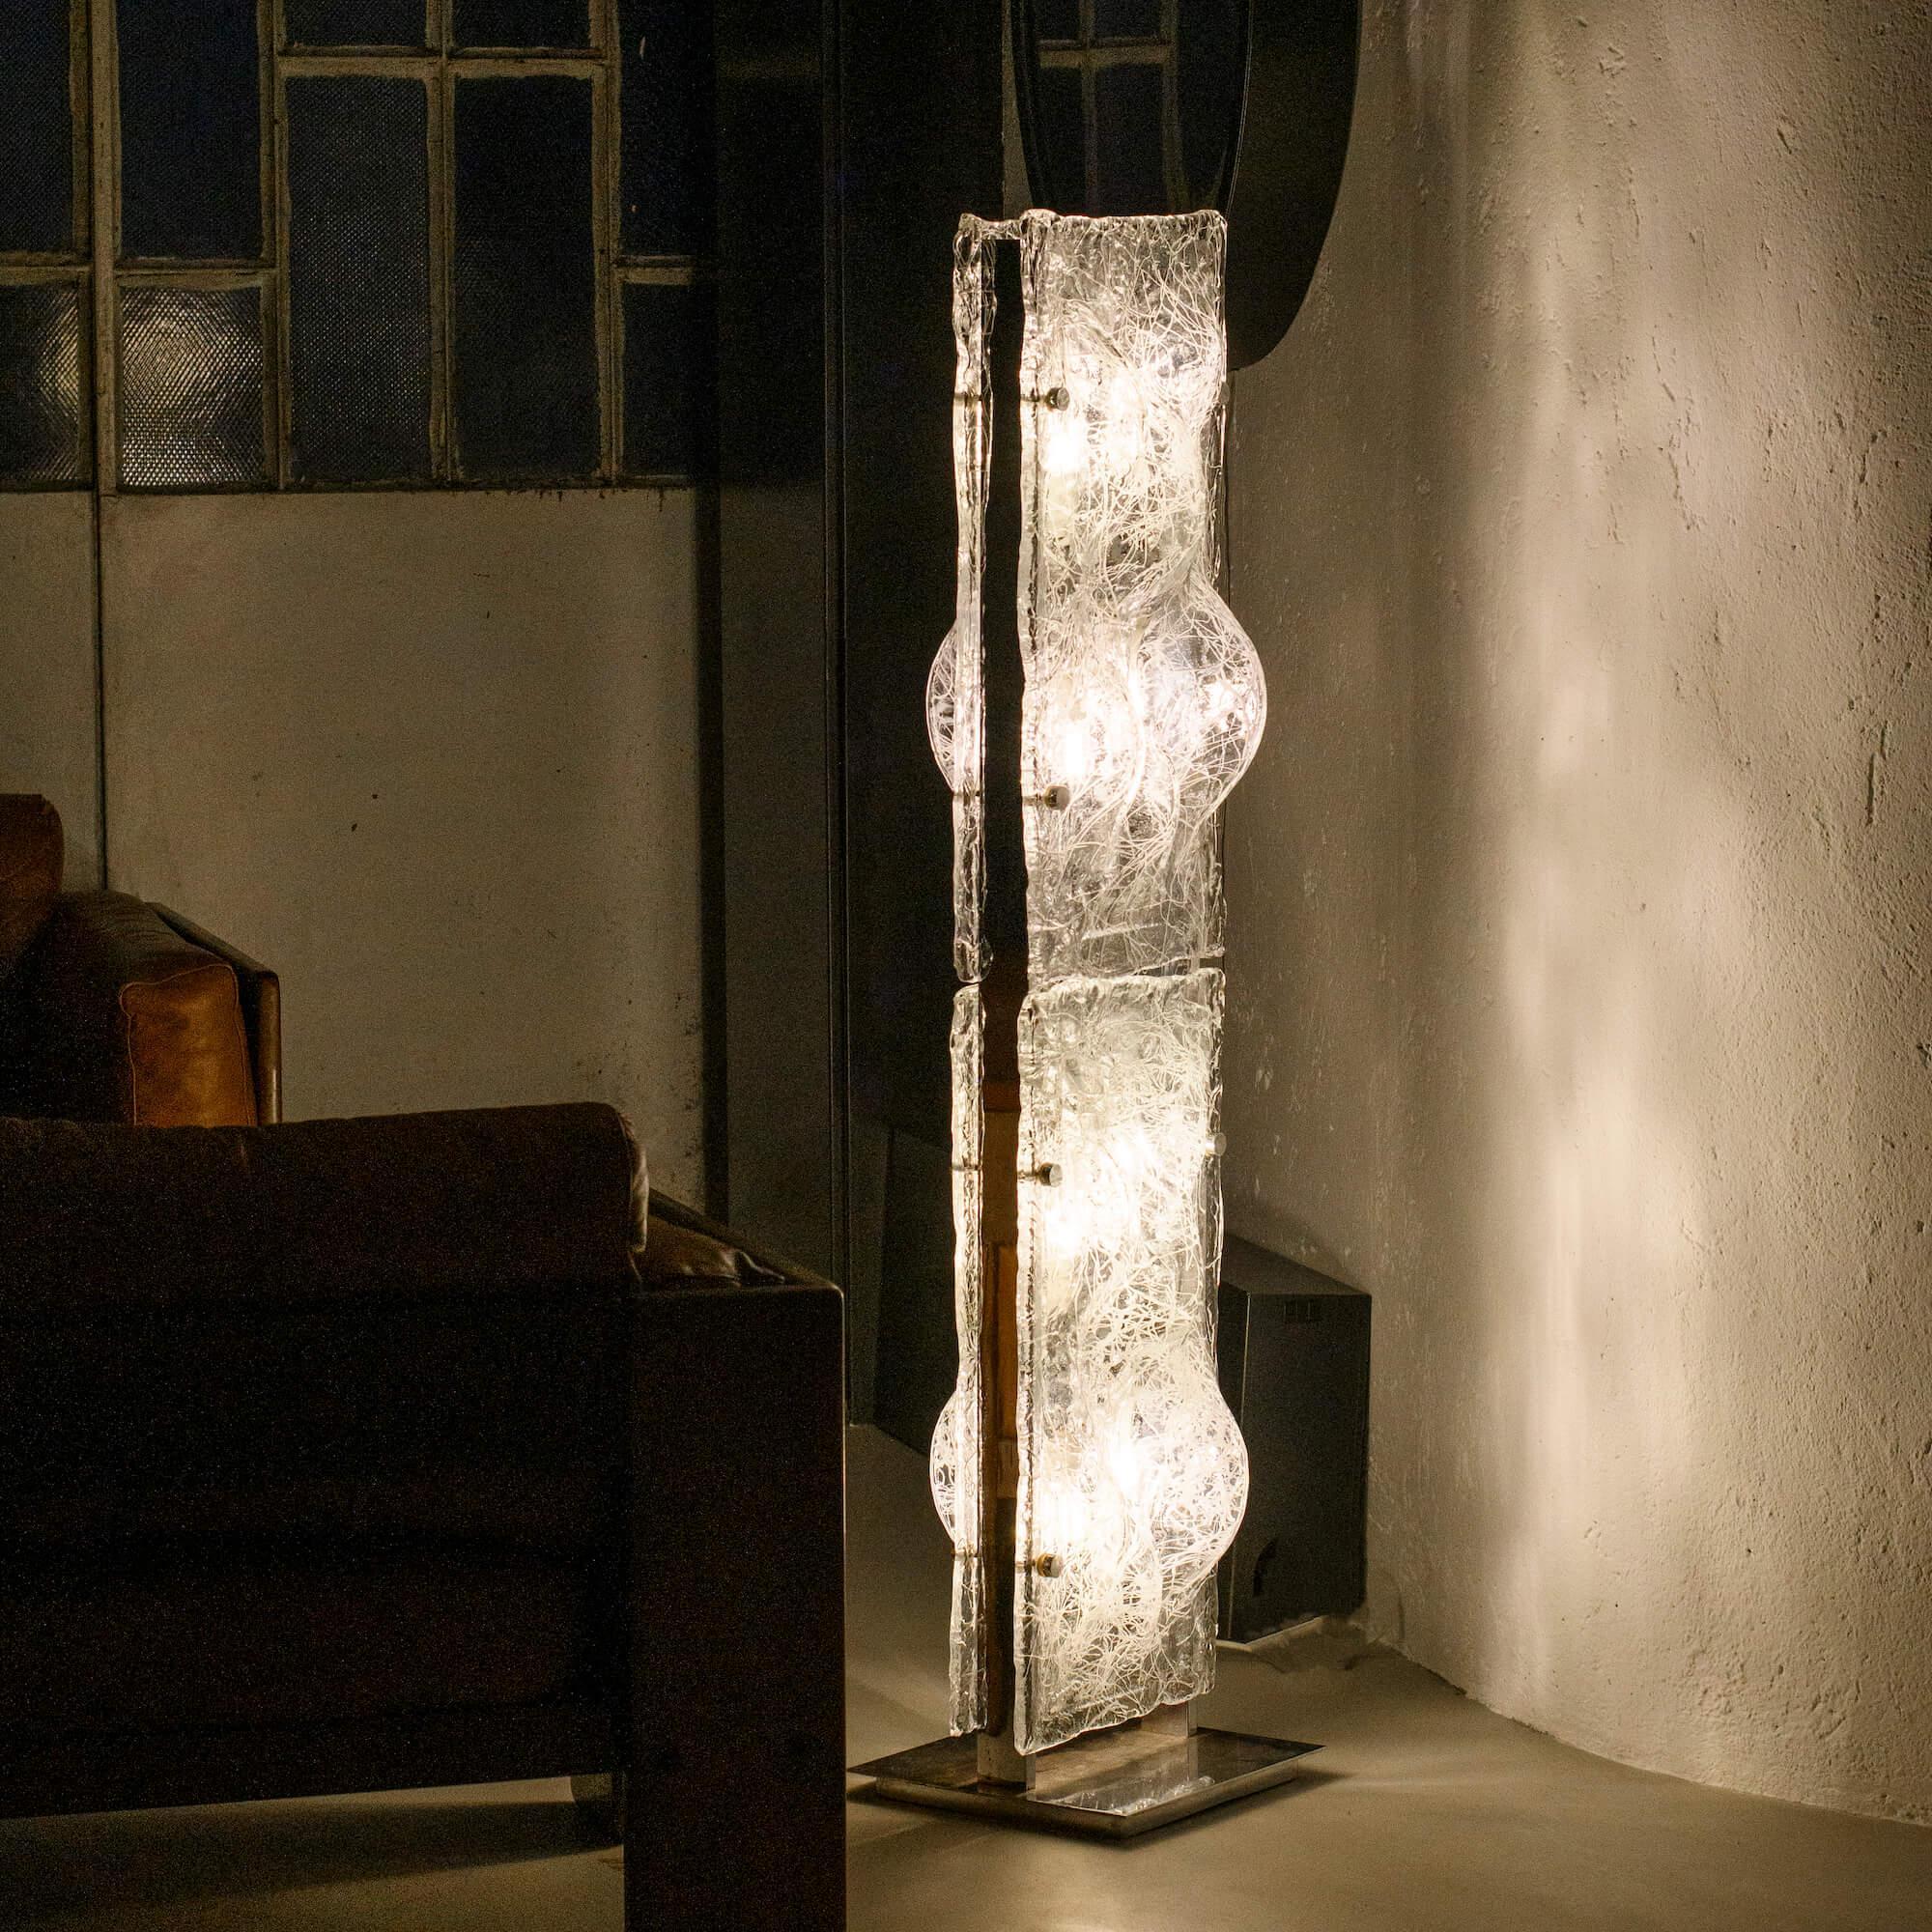 Atemberaubende skulpturale Murano-Stehlampe im Vintage-Stil, entworfen von Toni Zuccheri in den 1970er Jahren. Verchromter Metallkorpus mit vier dicken, geformten Glasscheiben, aus klarem Glas mit eingelegten weißen Verzierungen. Die Lampe ist